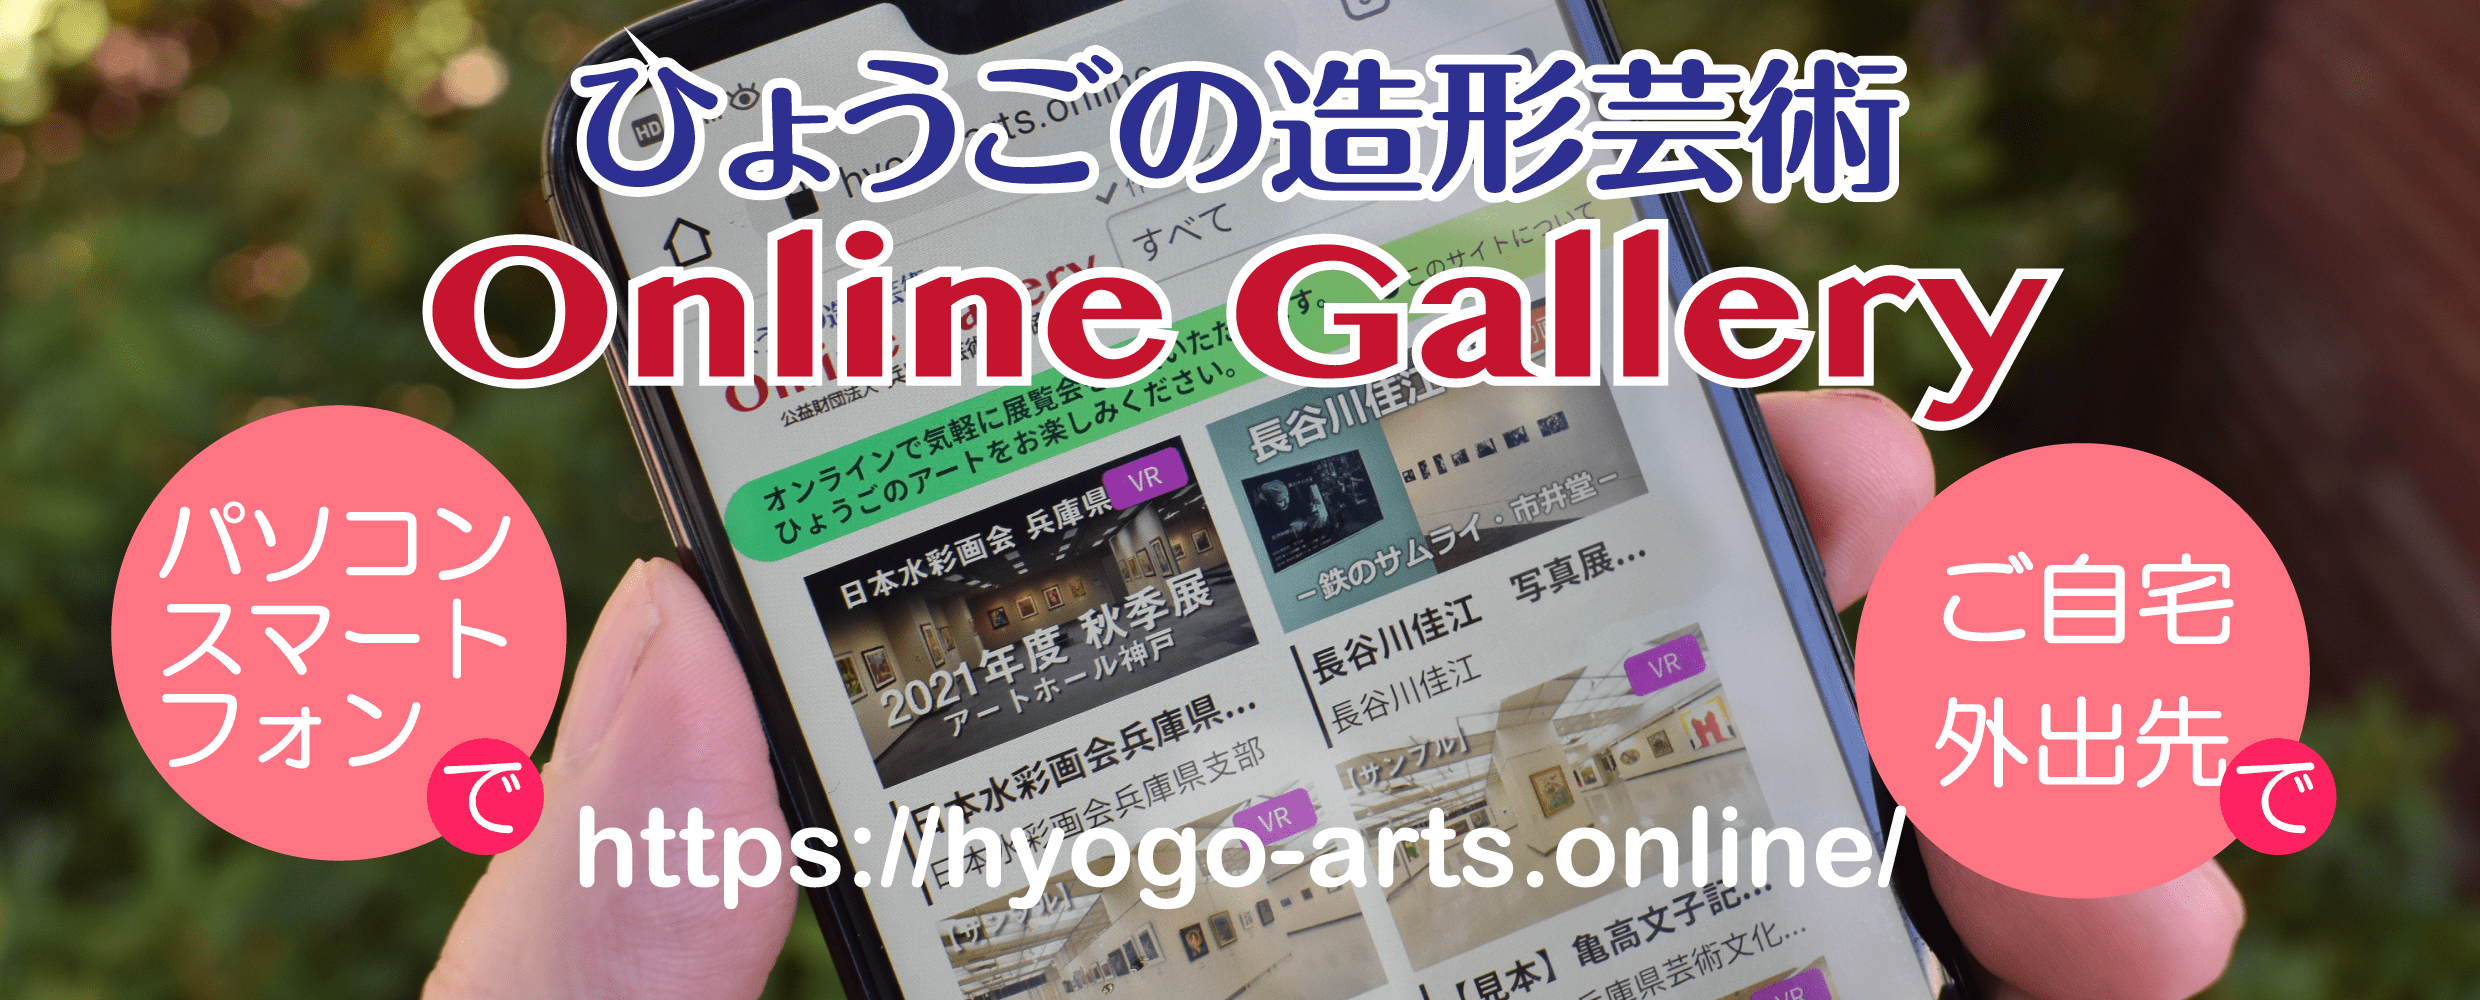 ひょうごの造形芸術 Online Gallery